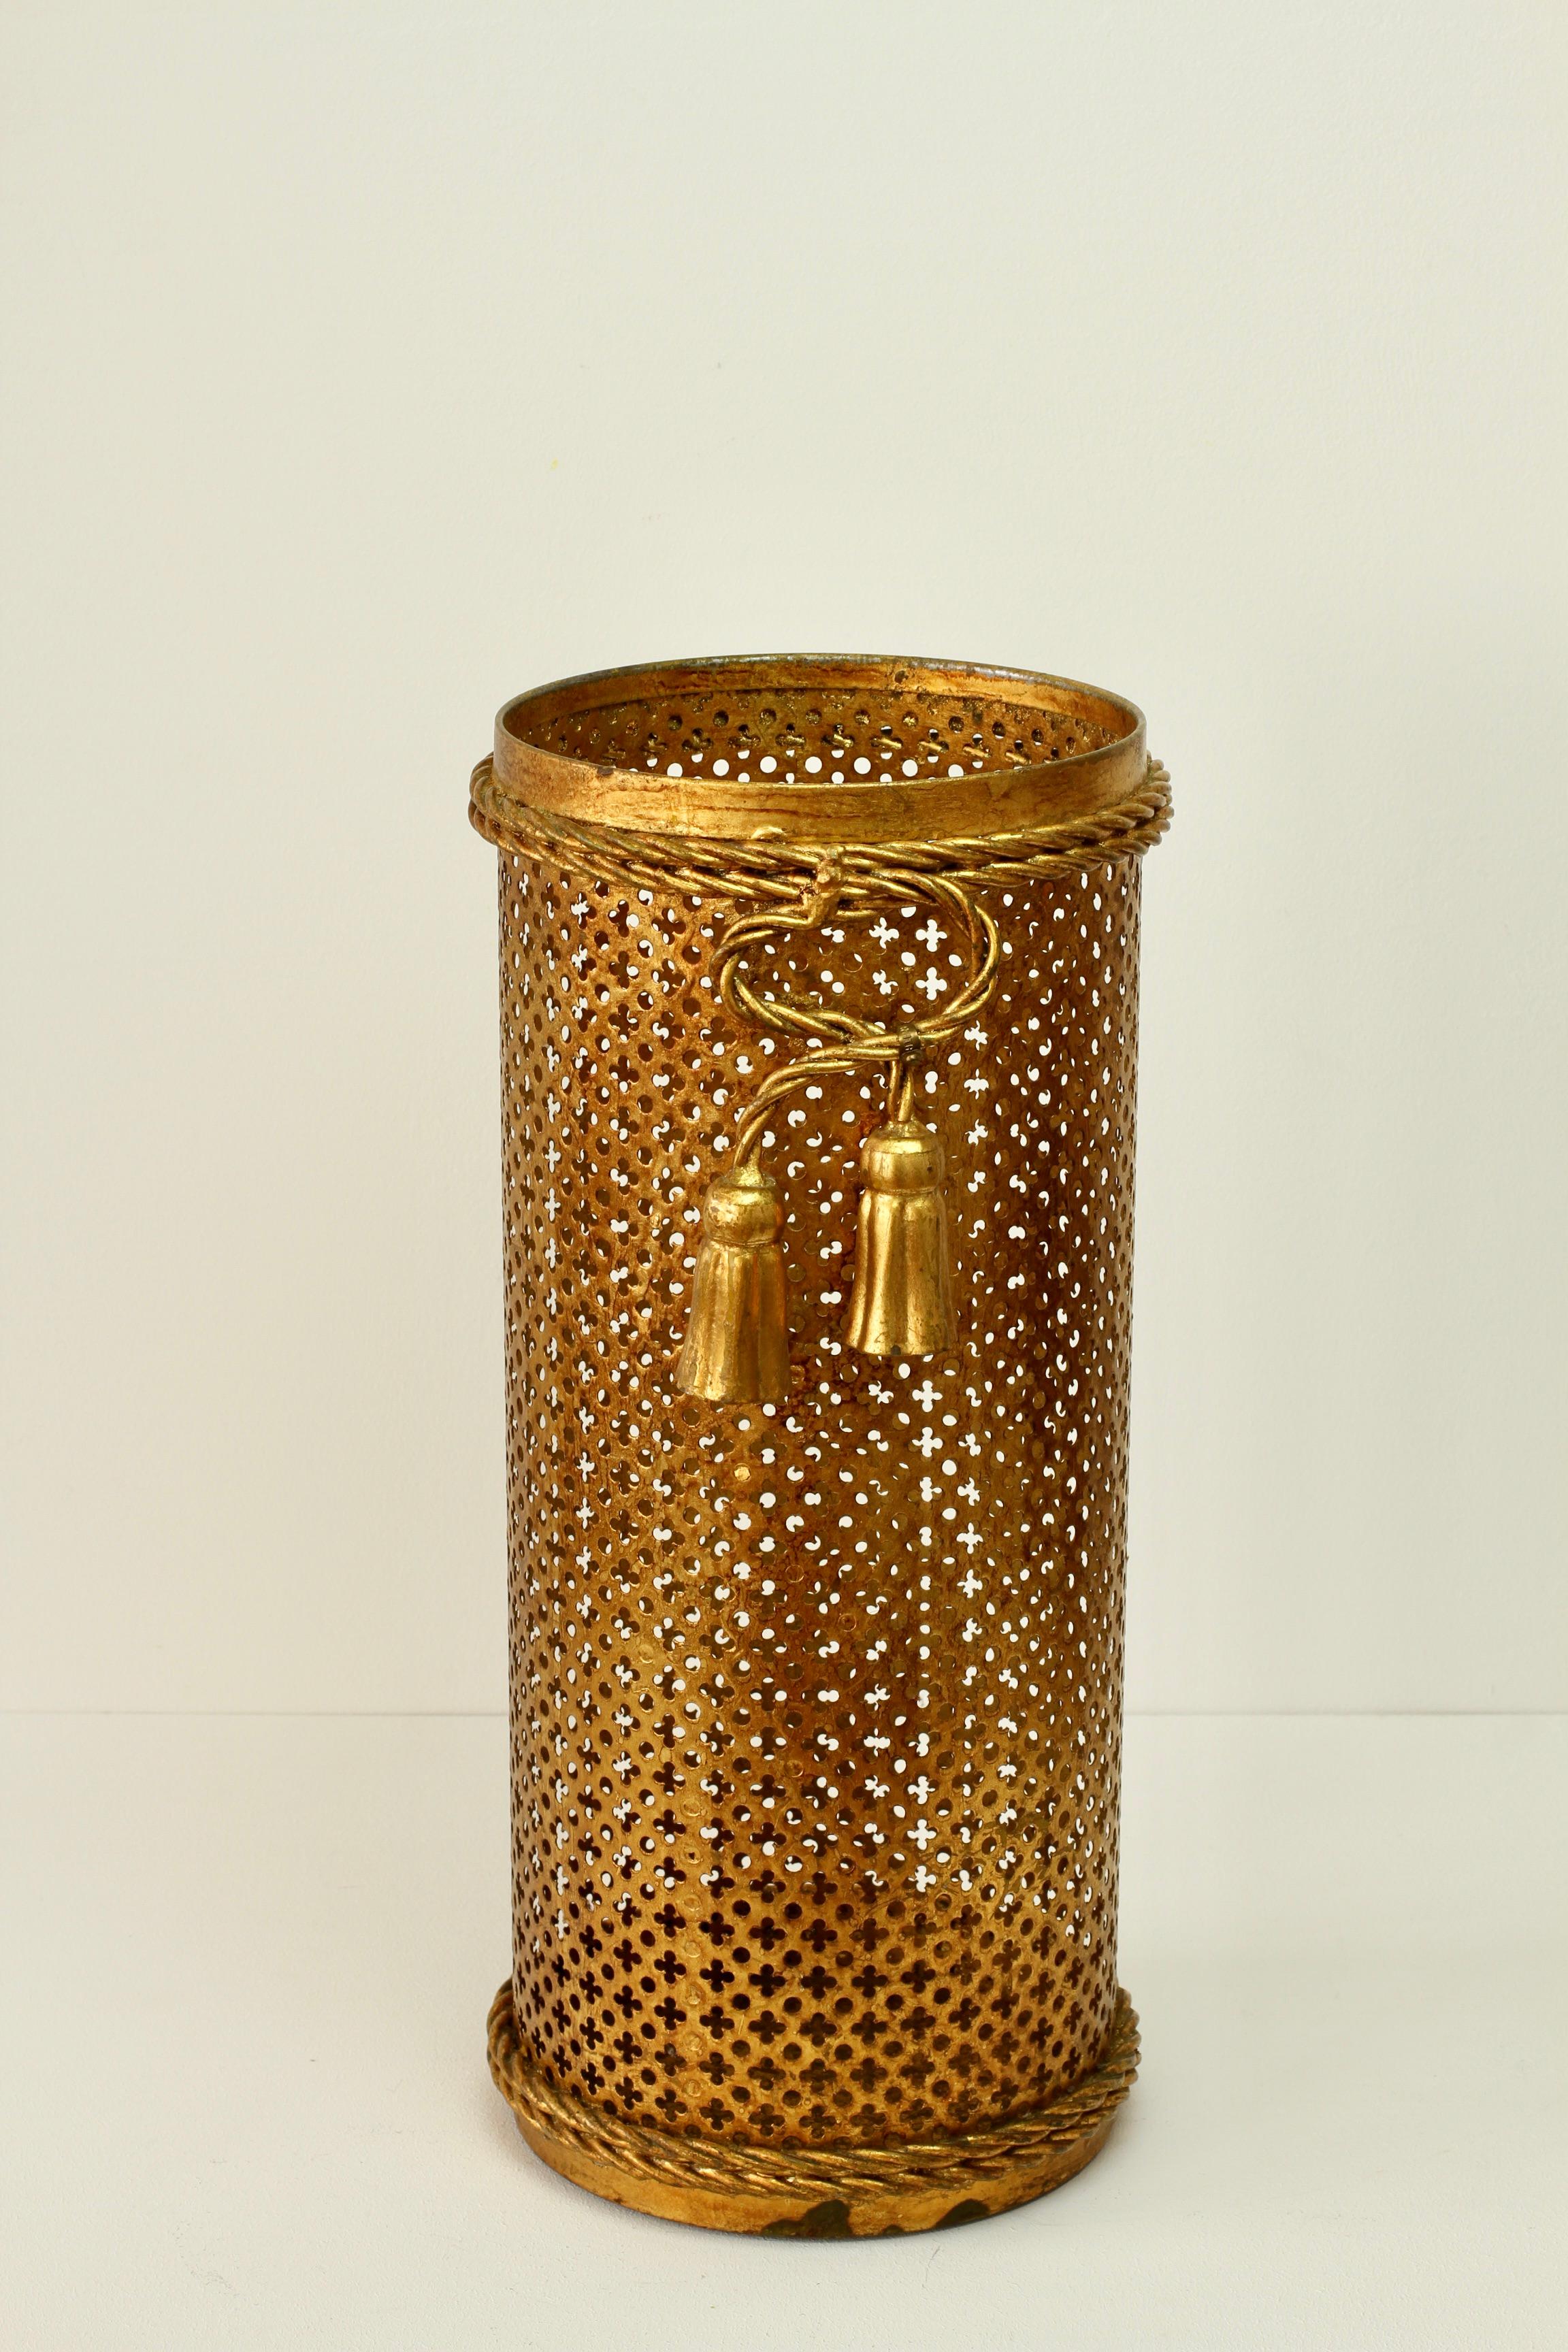 Superbe porte-parapluies de style Hollywood Regency en or, doré et doré du milieu du siècle dernier, fabriqué en Italie, vers 1950. Le travail du métal en forme de treillis perforé, avec des détails de corde pliée et de glands, termine parfaitement